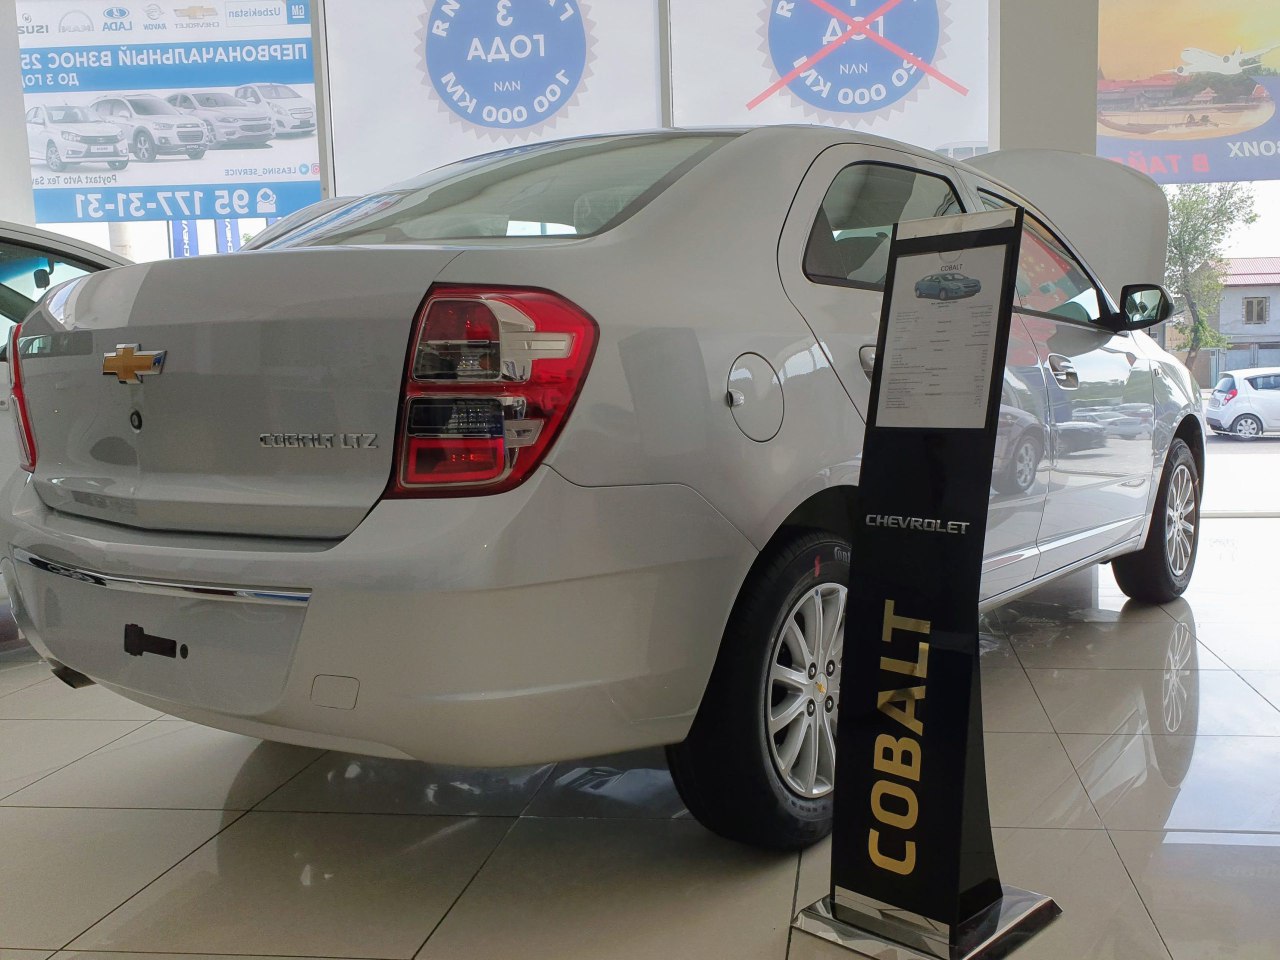 СМИ: Автомобили Cobalt и Gentra могут взлететь в цене